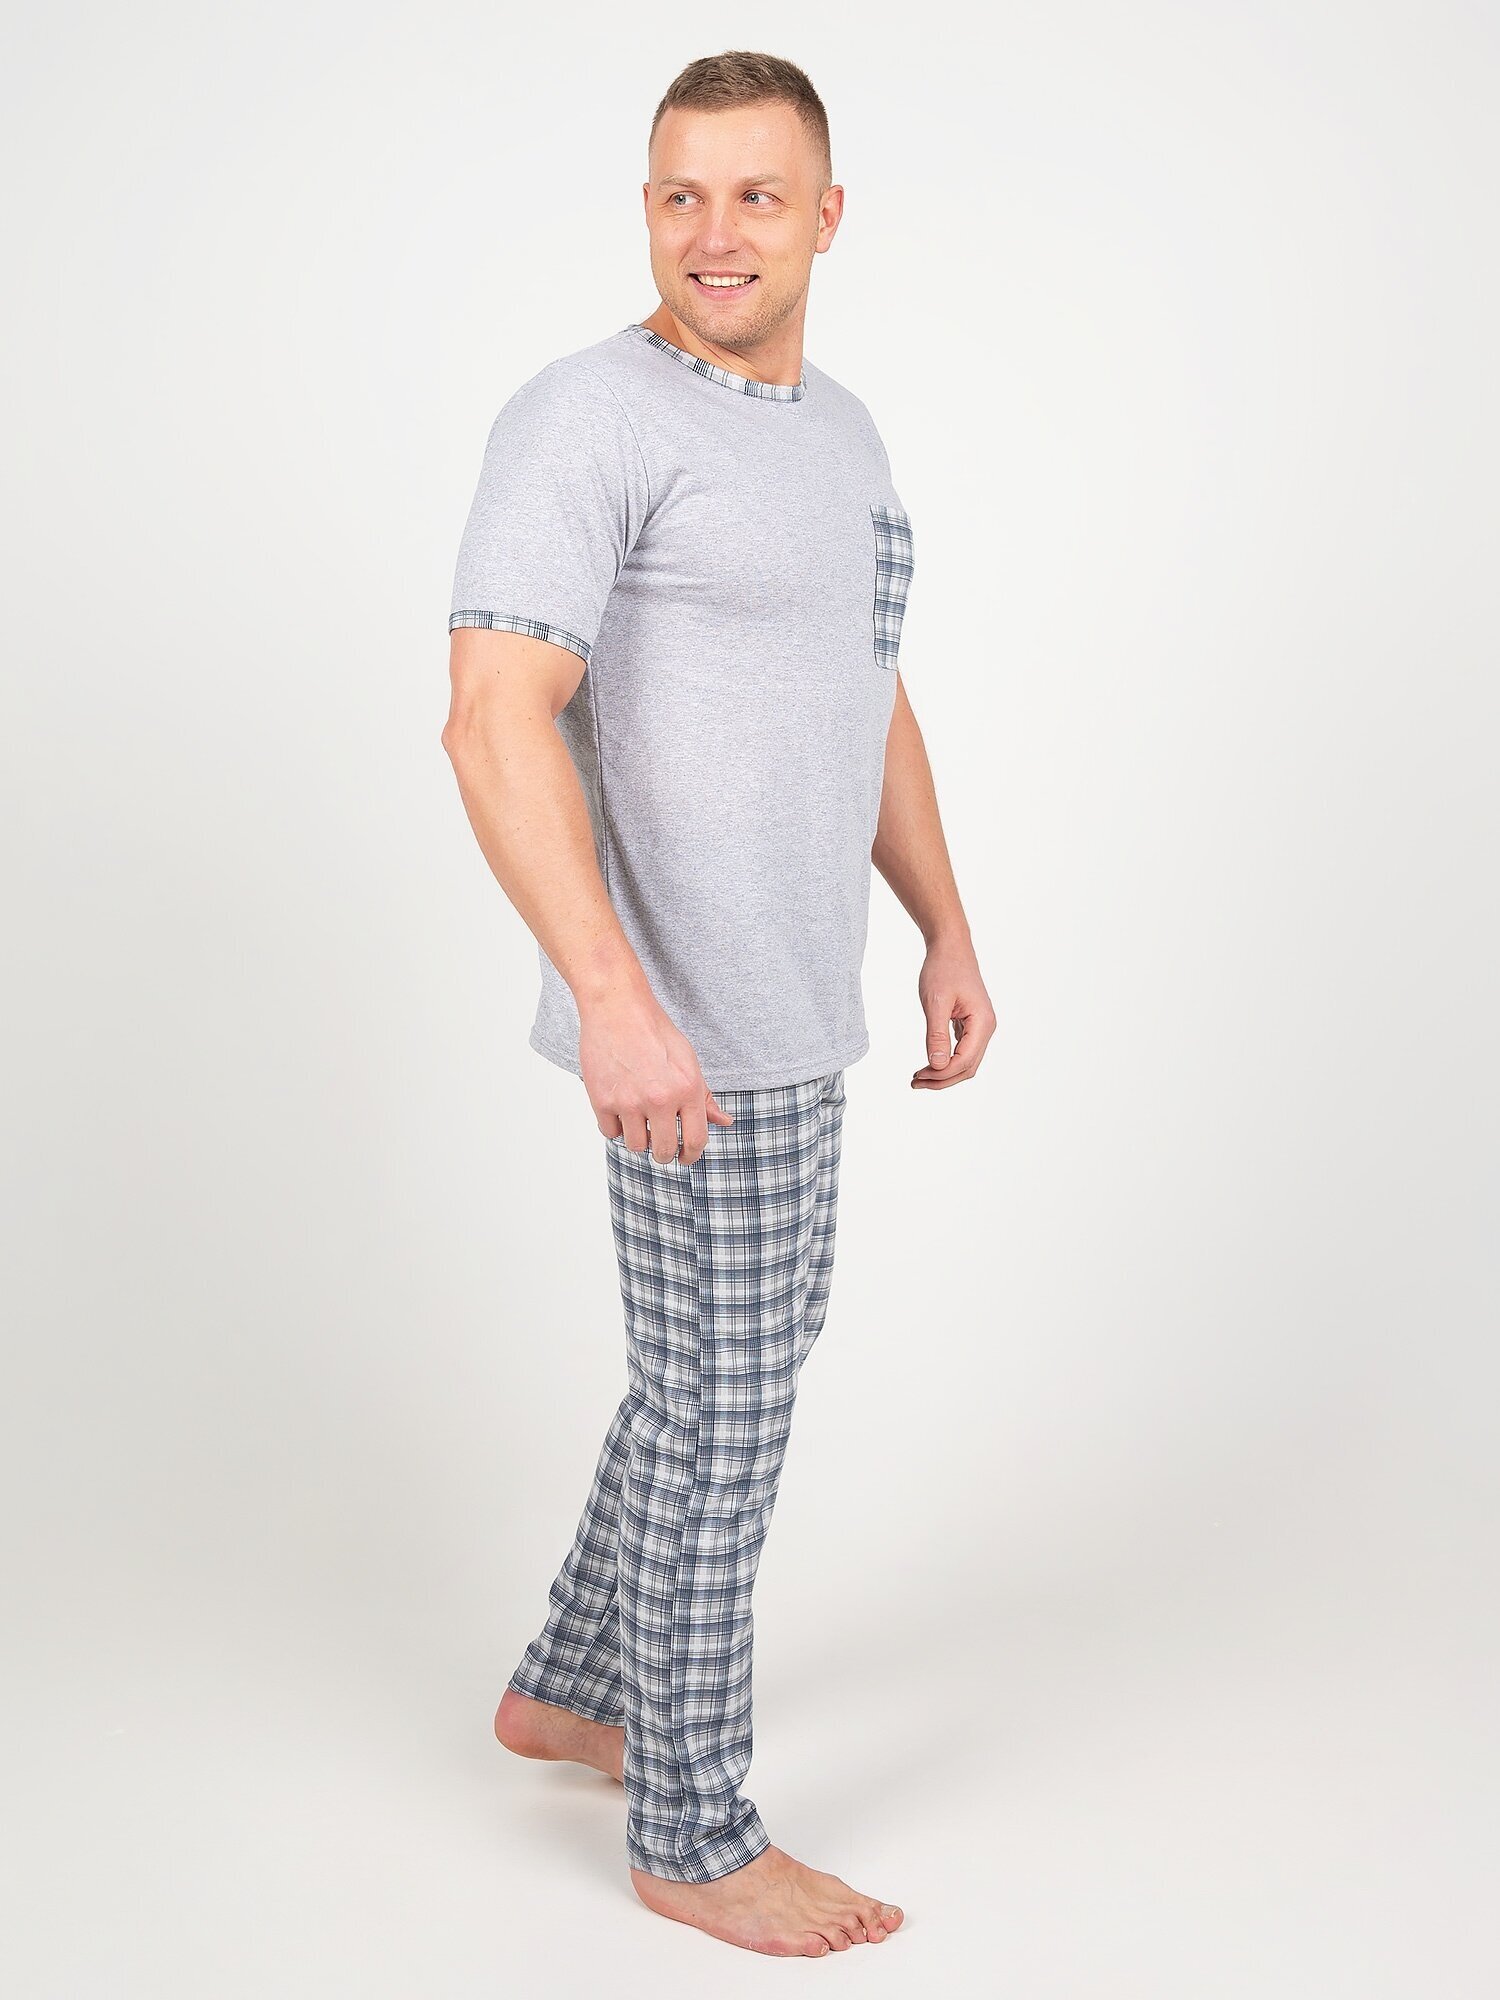 Пижама мужская, Ивелена, серая, 50 размер - фотография № 8